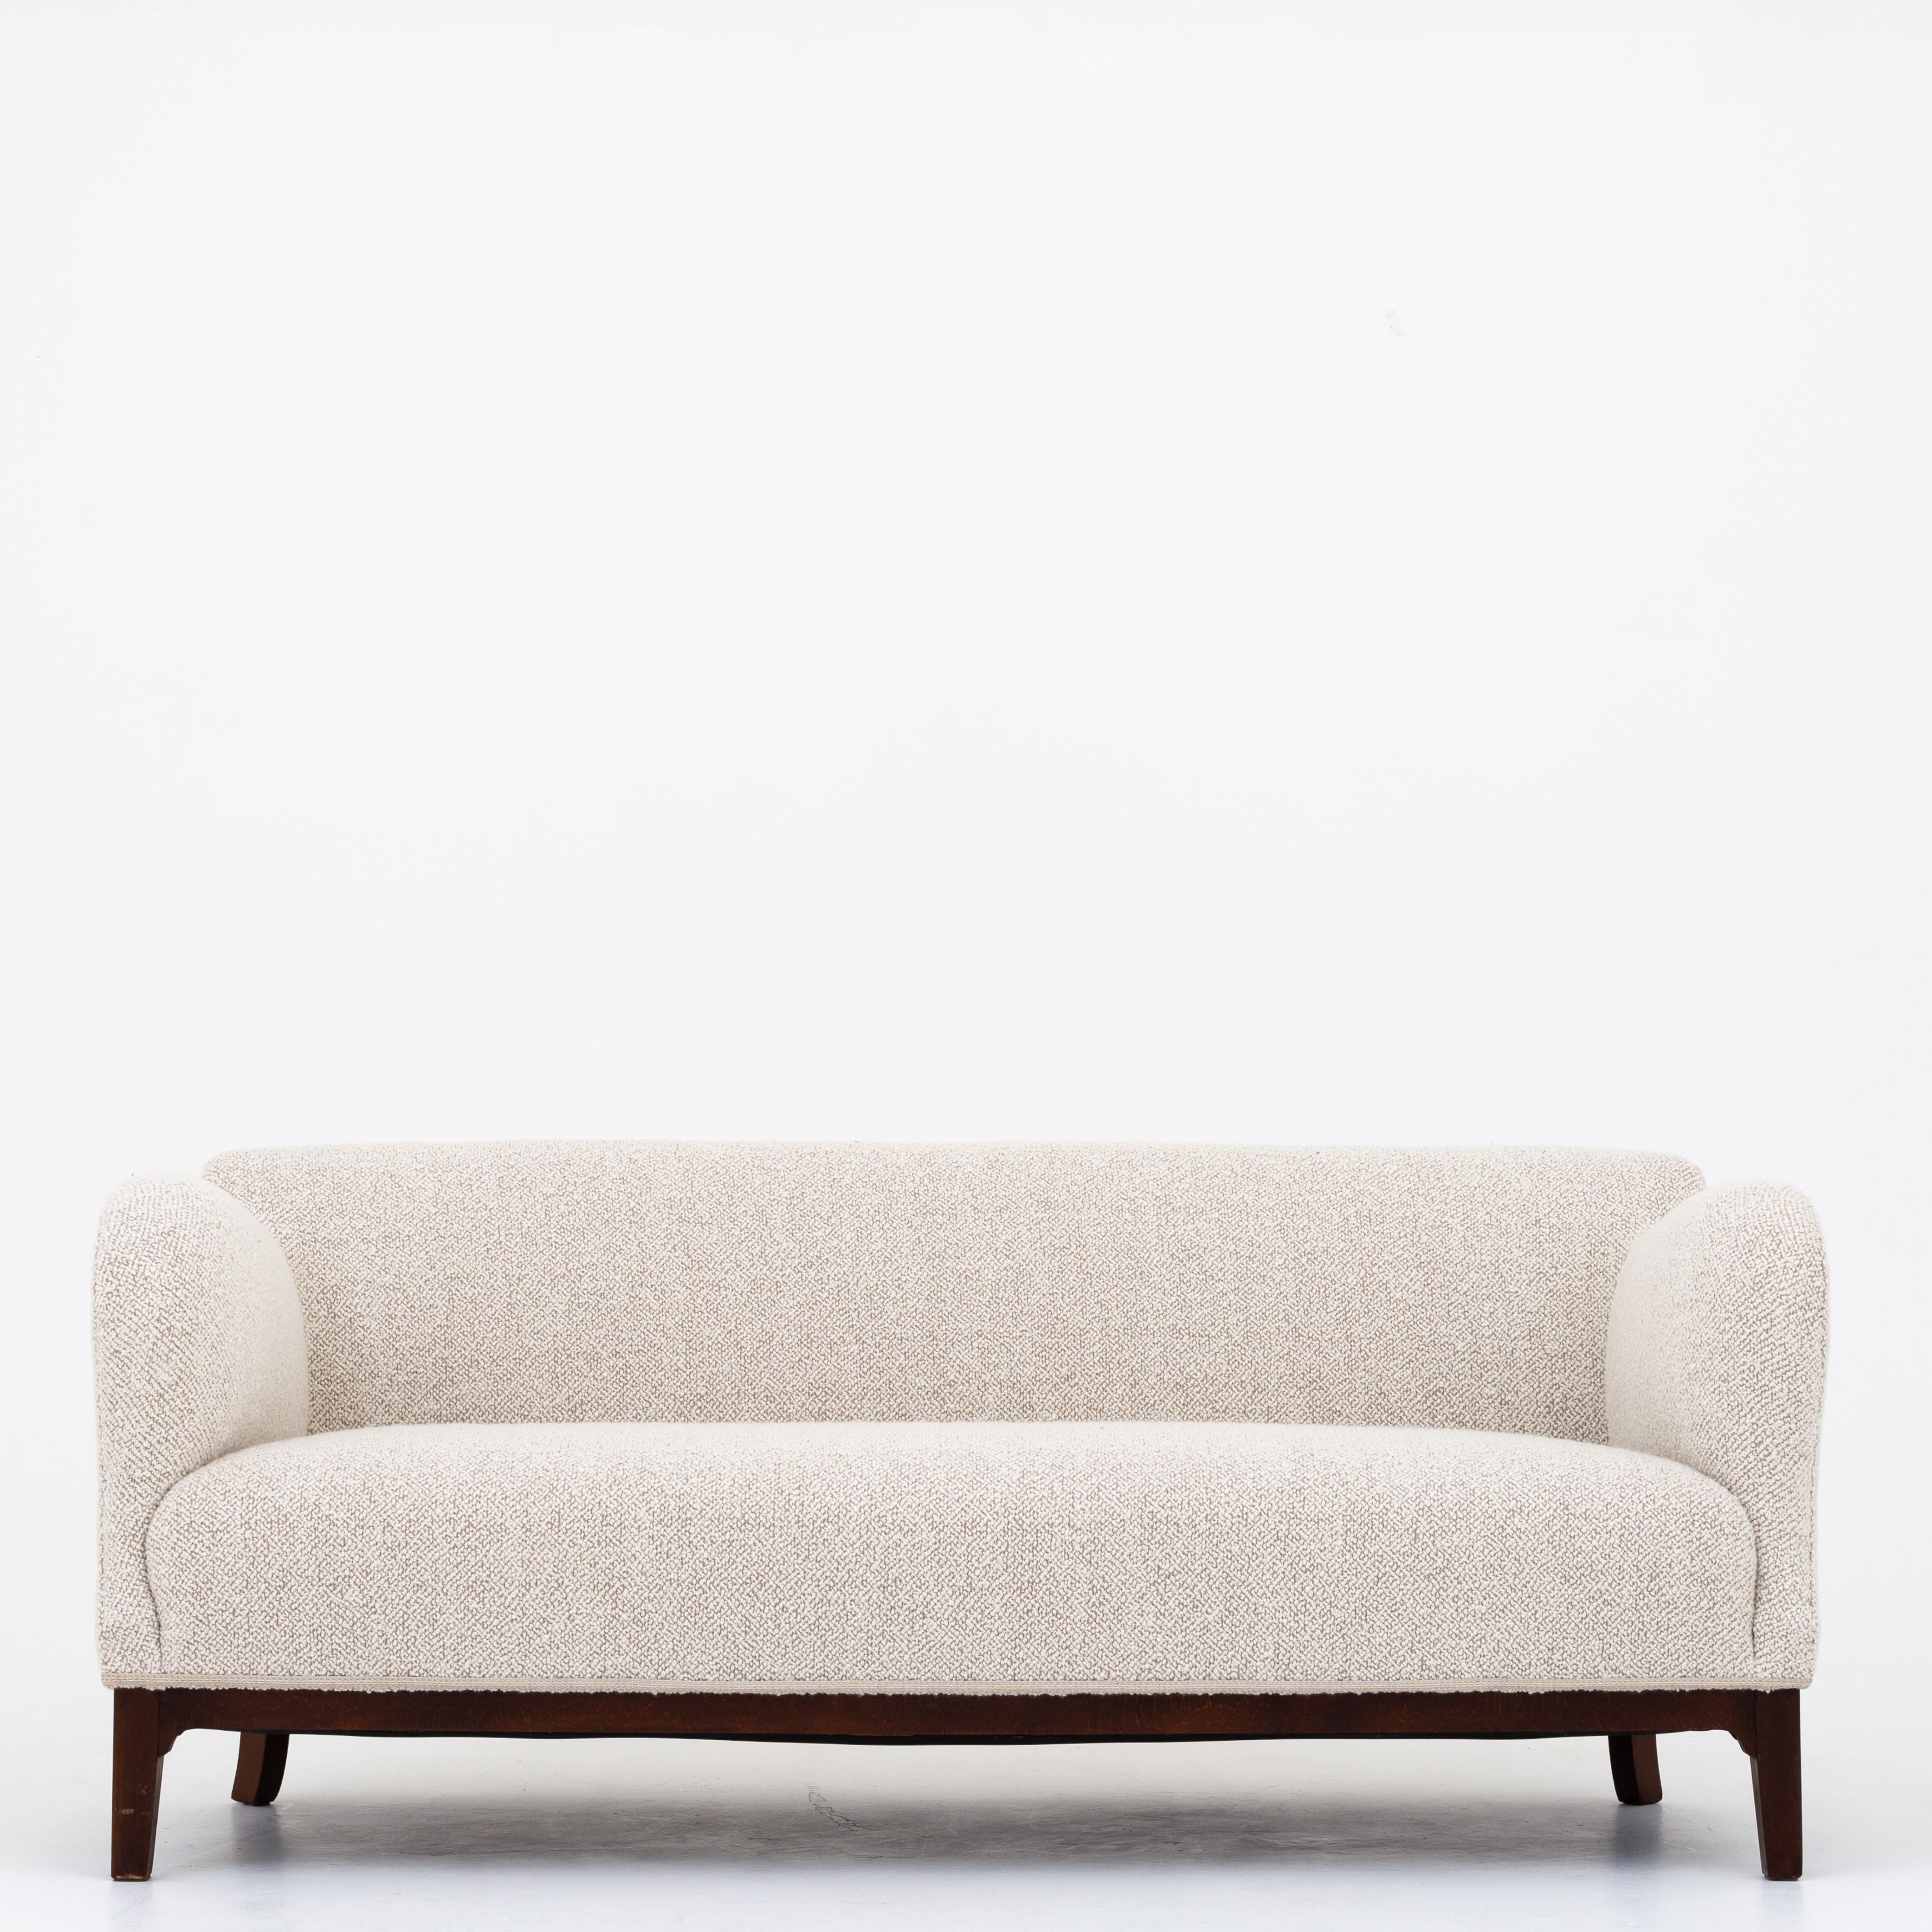 Reupholstered 3-Seat Sofa In Good Condition In Copenhagen, DK